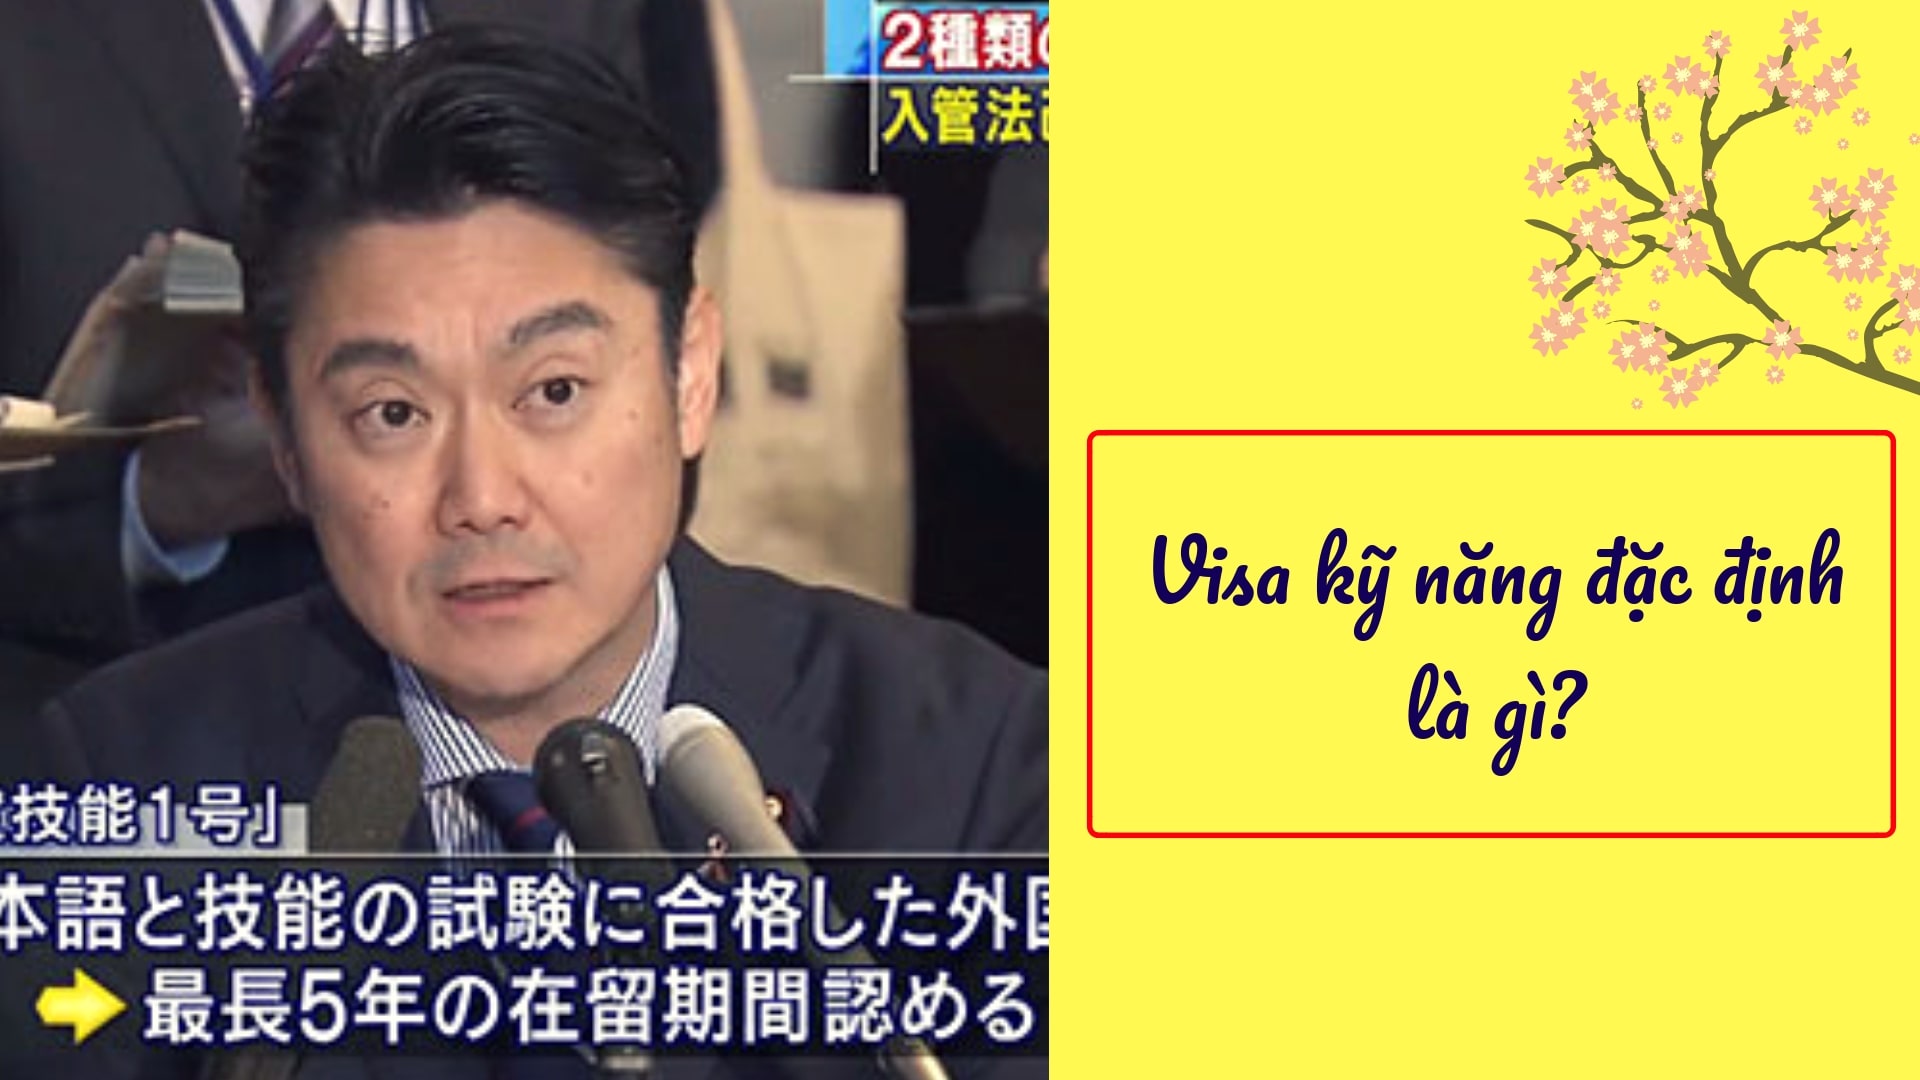 Visa đặc định là gì? 10 vấn đề quan trọng phải biết về visa Tokutei ginou Nhật Bản!